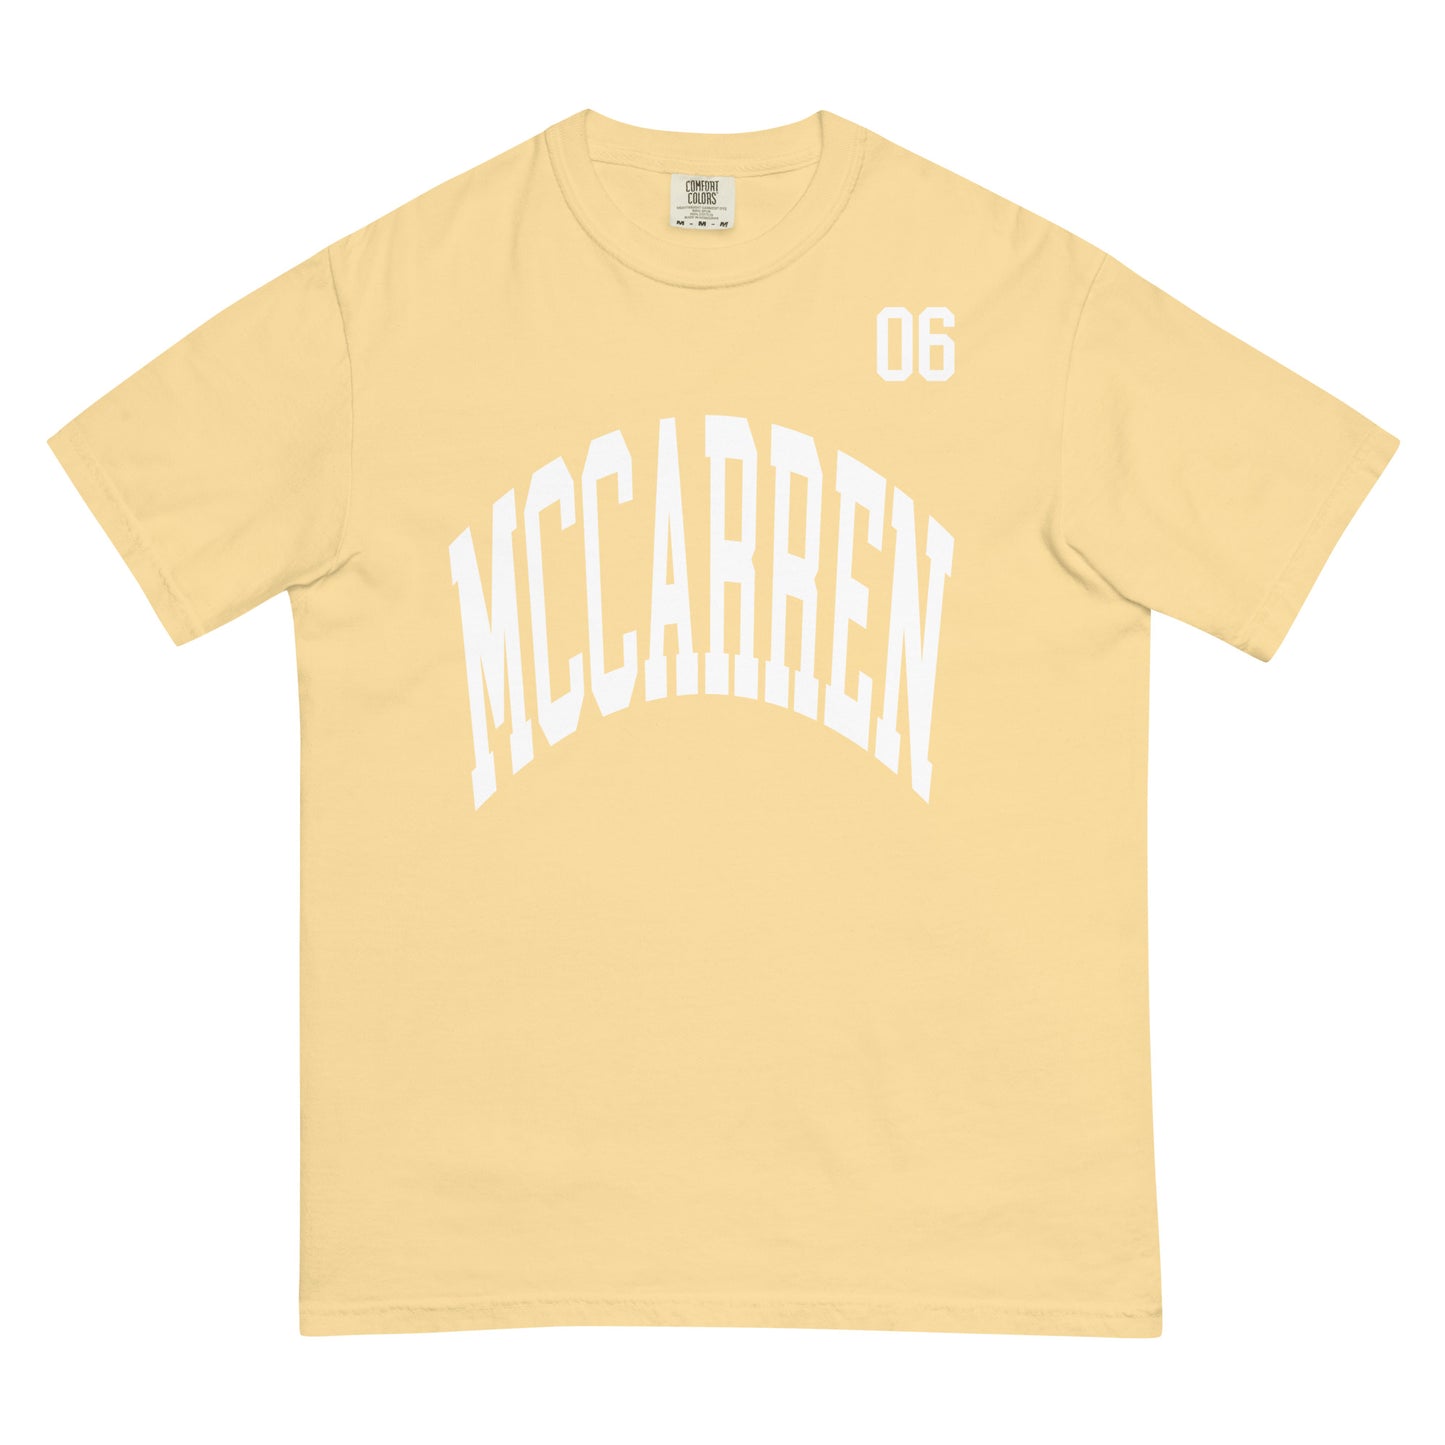 McCarren Park Sports Yellow T-Shirt